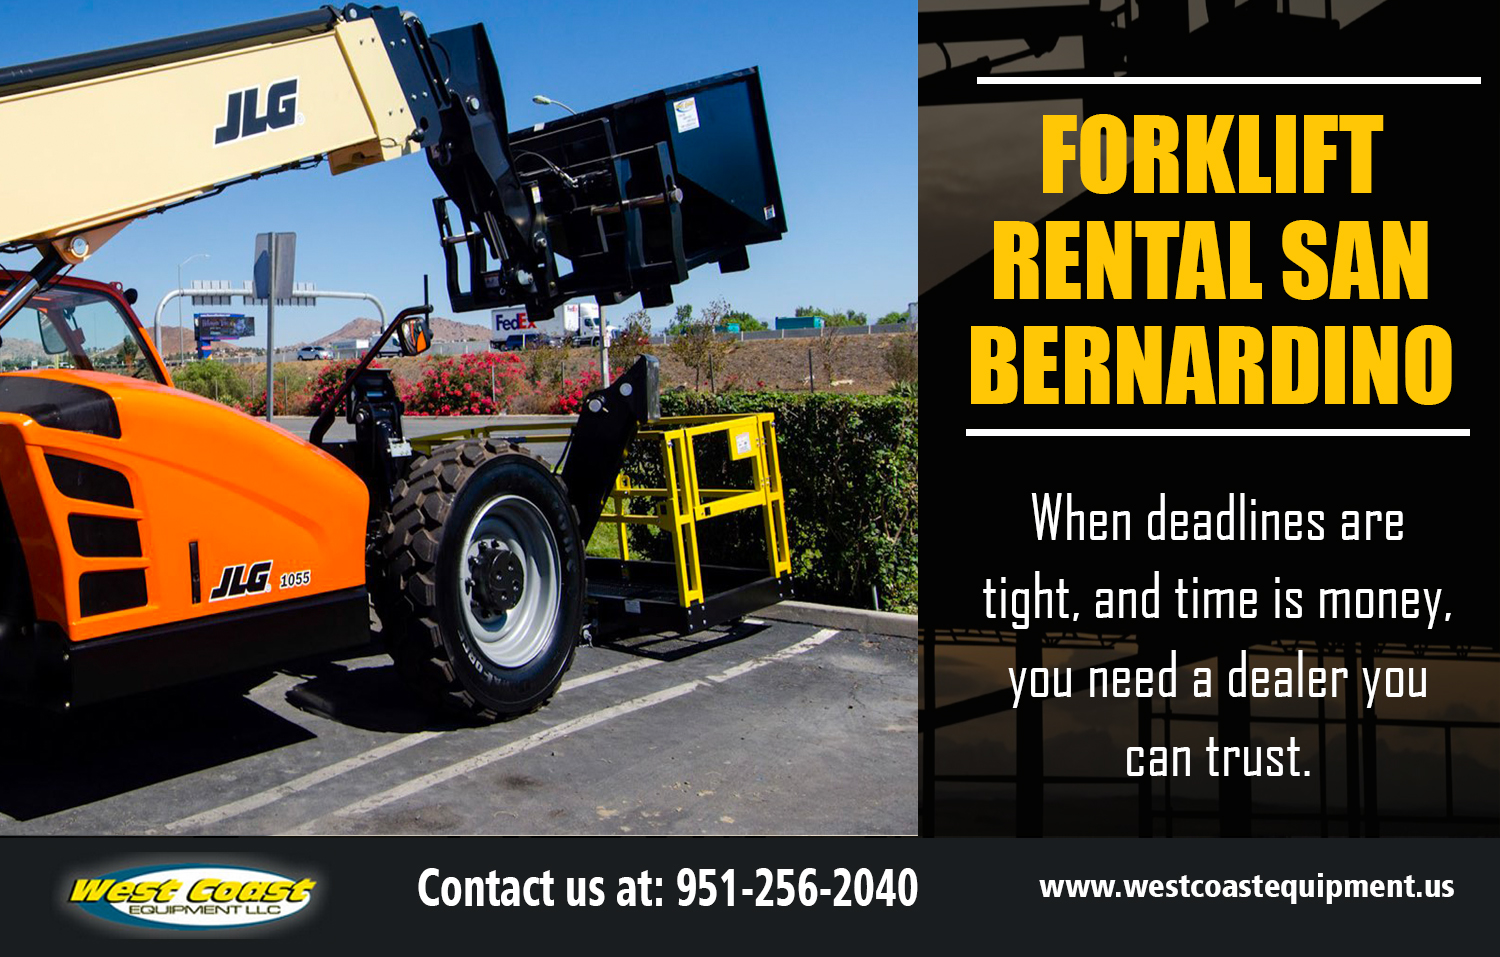 Forklift Rental San Bernardino Construction Equipment Rental Los Angeles Ca